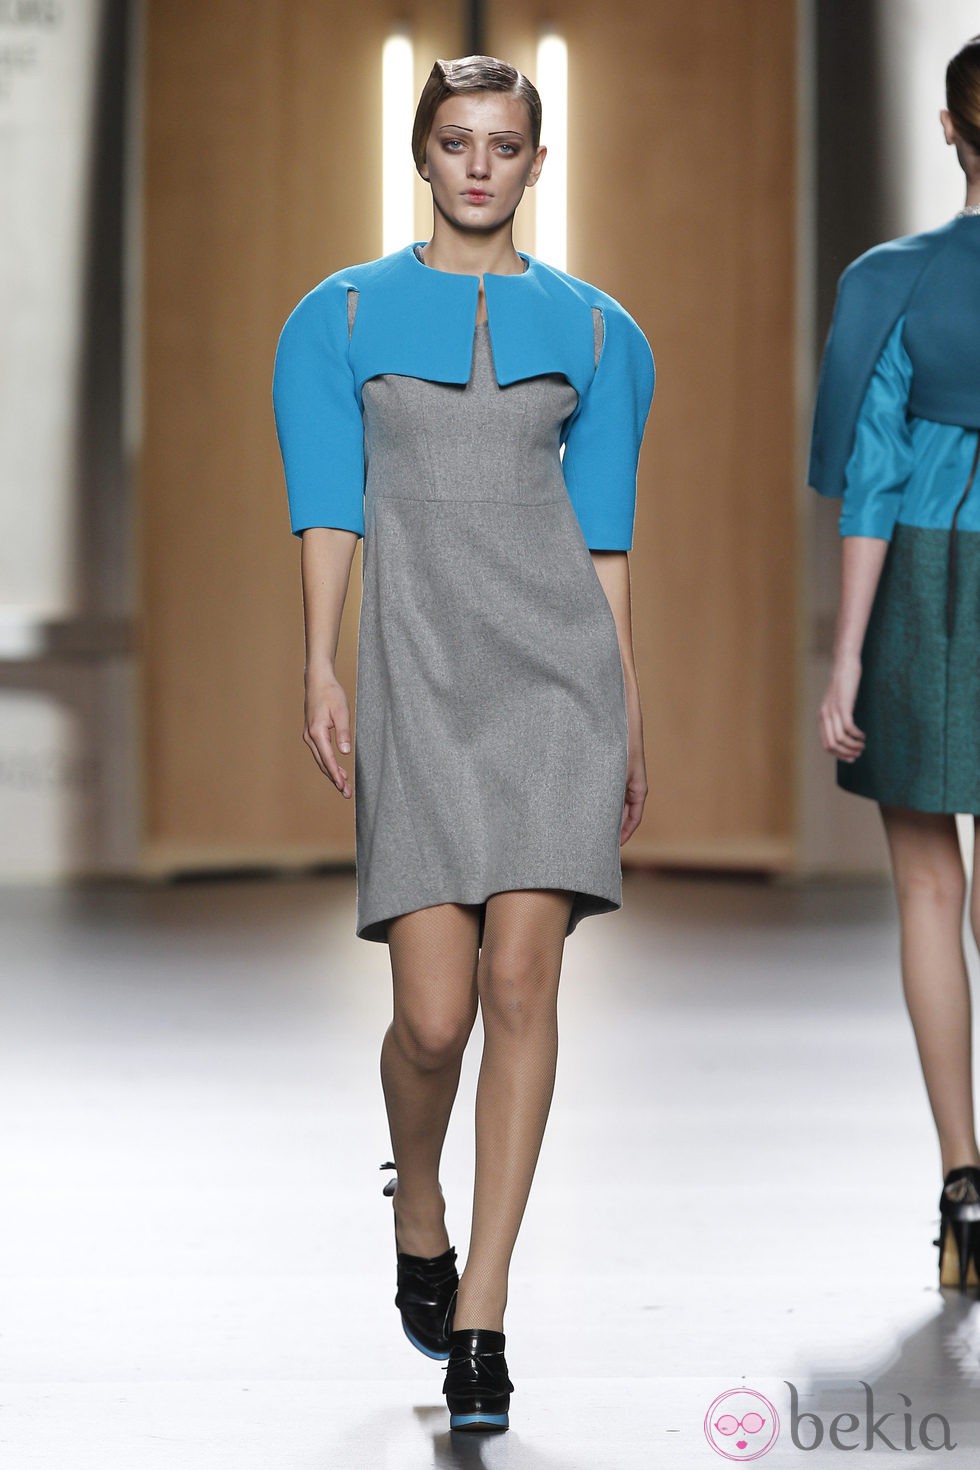 Vestido gris y azul pastel de Ana Locking en Fashion Week Madrid